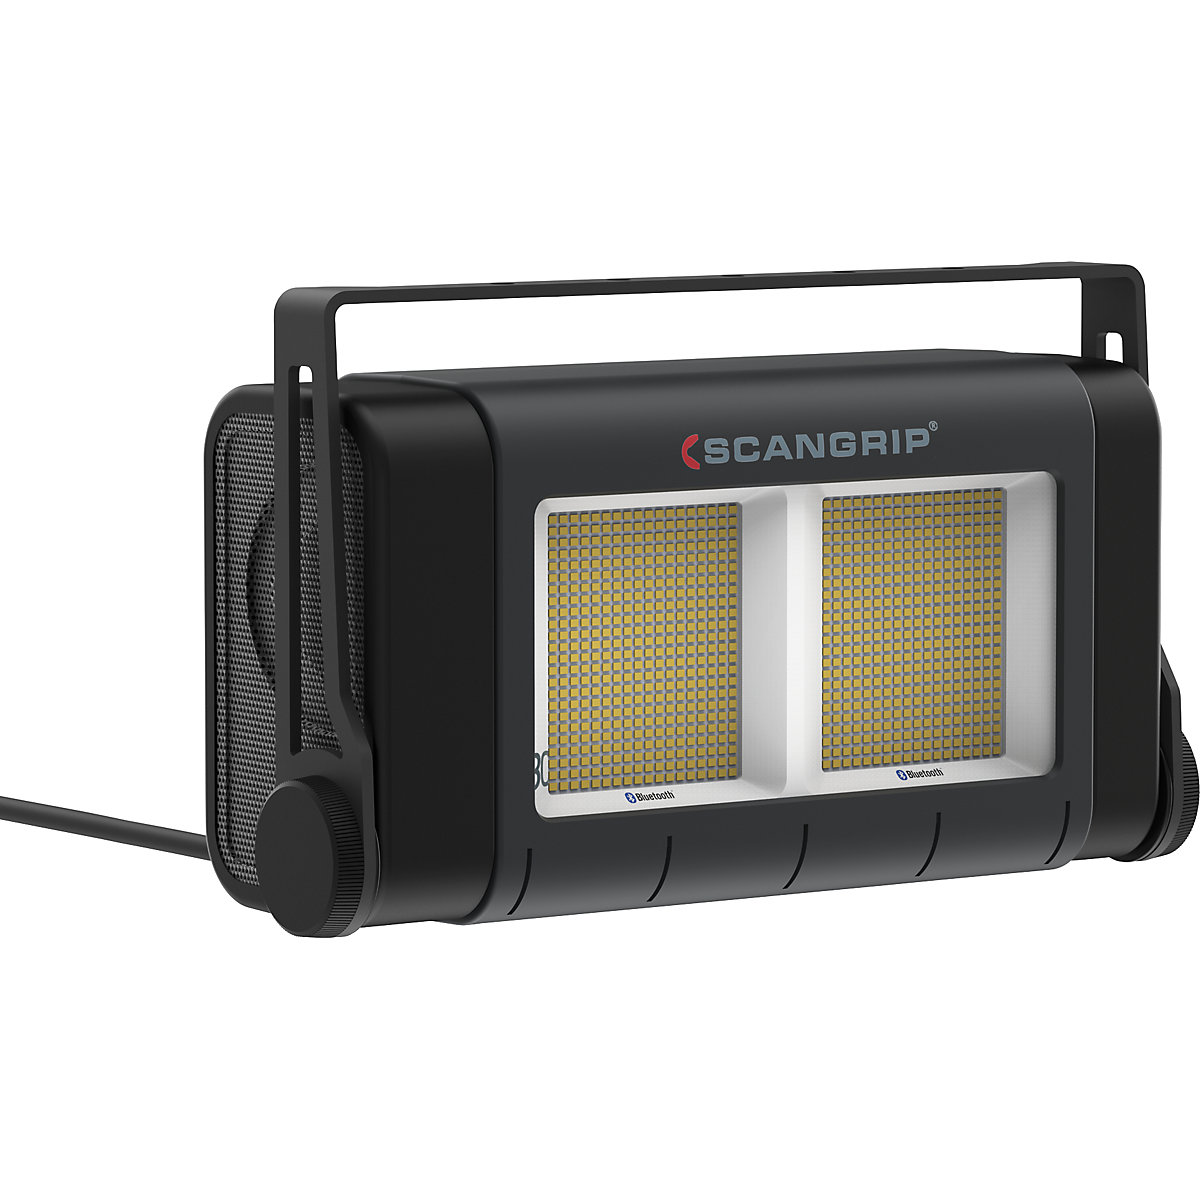 SITE LIGHT 80 LED-es reflektor építkezésekre - SCANGRIP